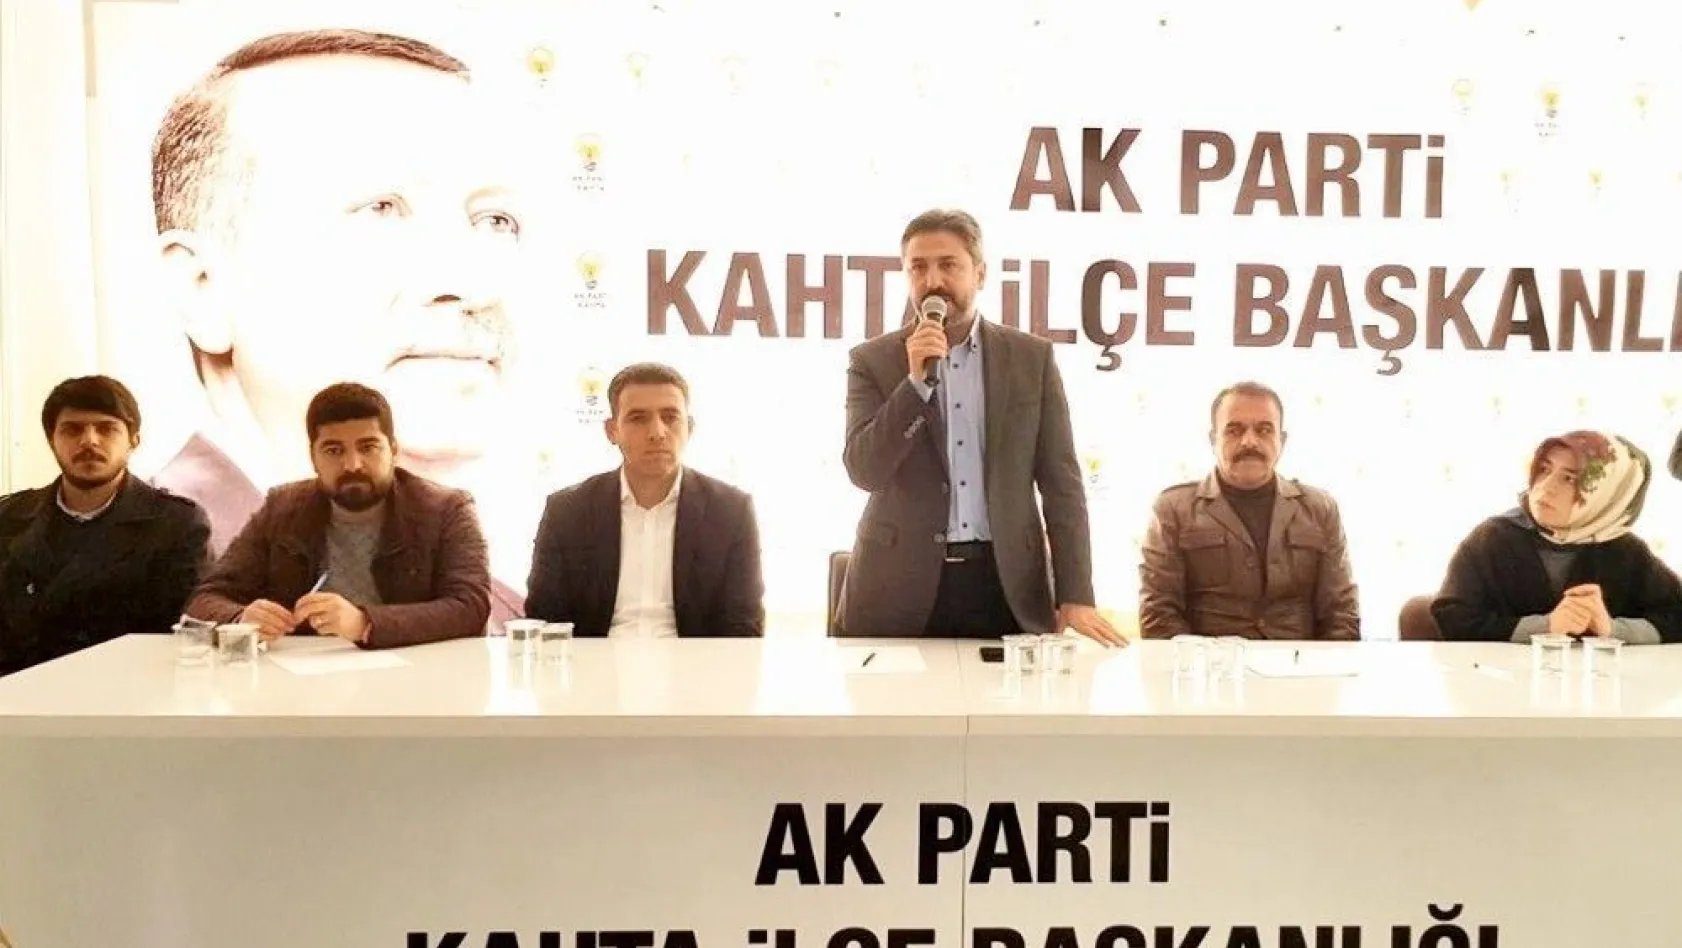 AK Parti Kahta İlçe Başkanlığı Ocak ayı danışma toplantısını gerçekleştirdi
